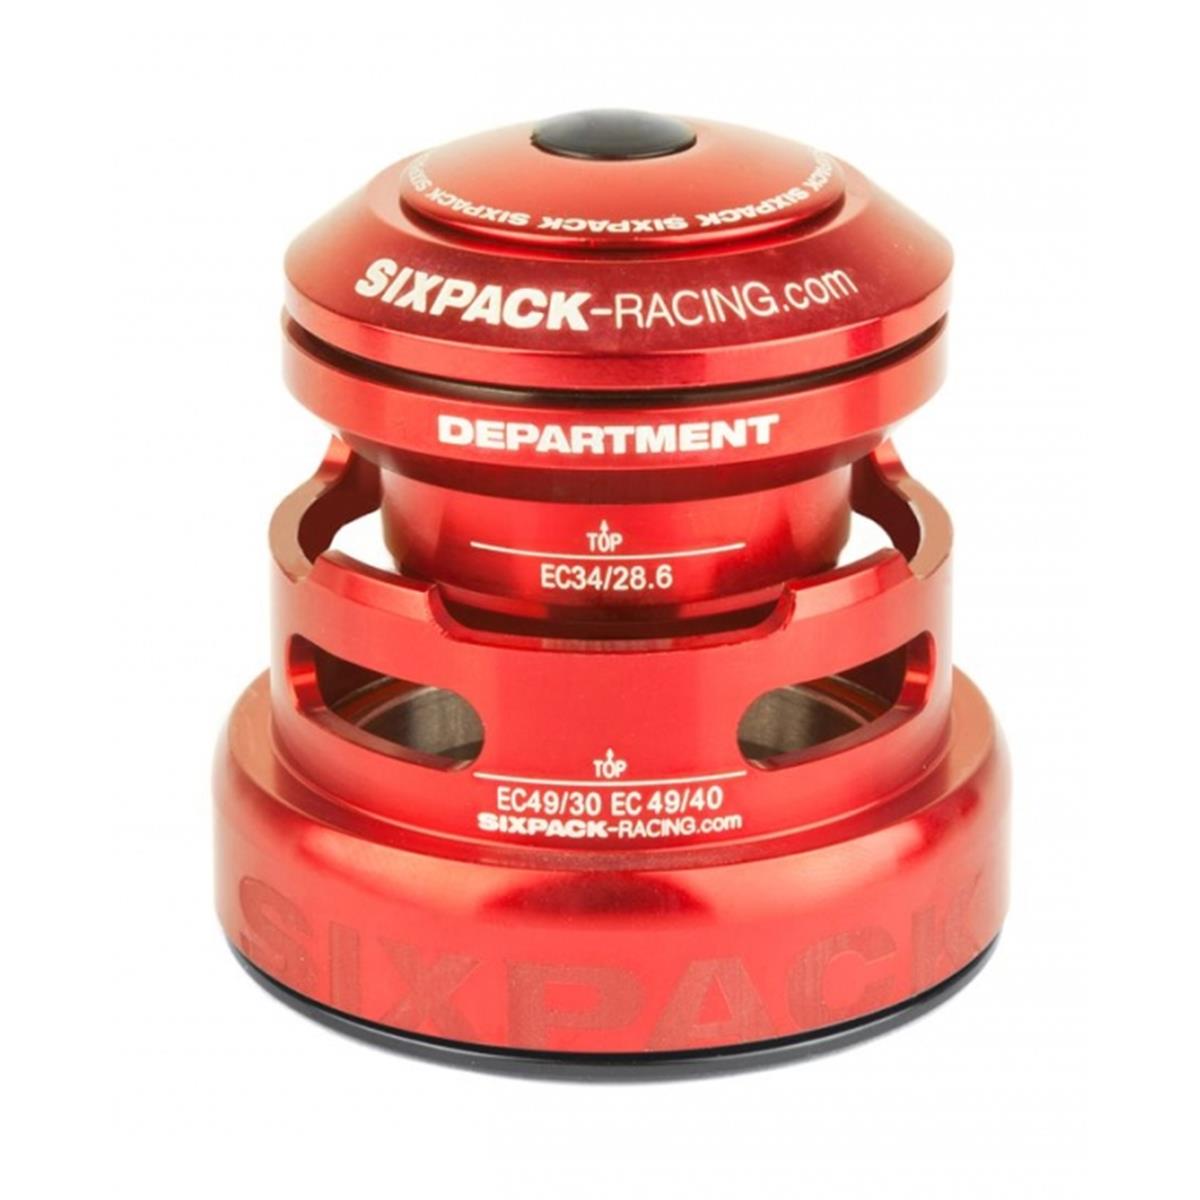 Sixpack Headset Department 2in1 Red, EC34 49/28.6 I EC49/30 & EC34/28.6 I EC49/40